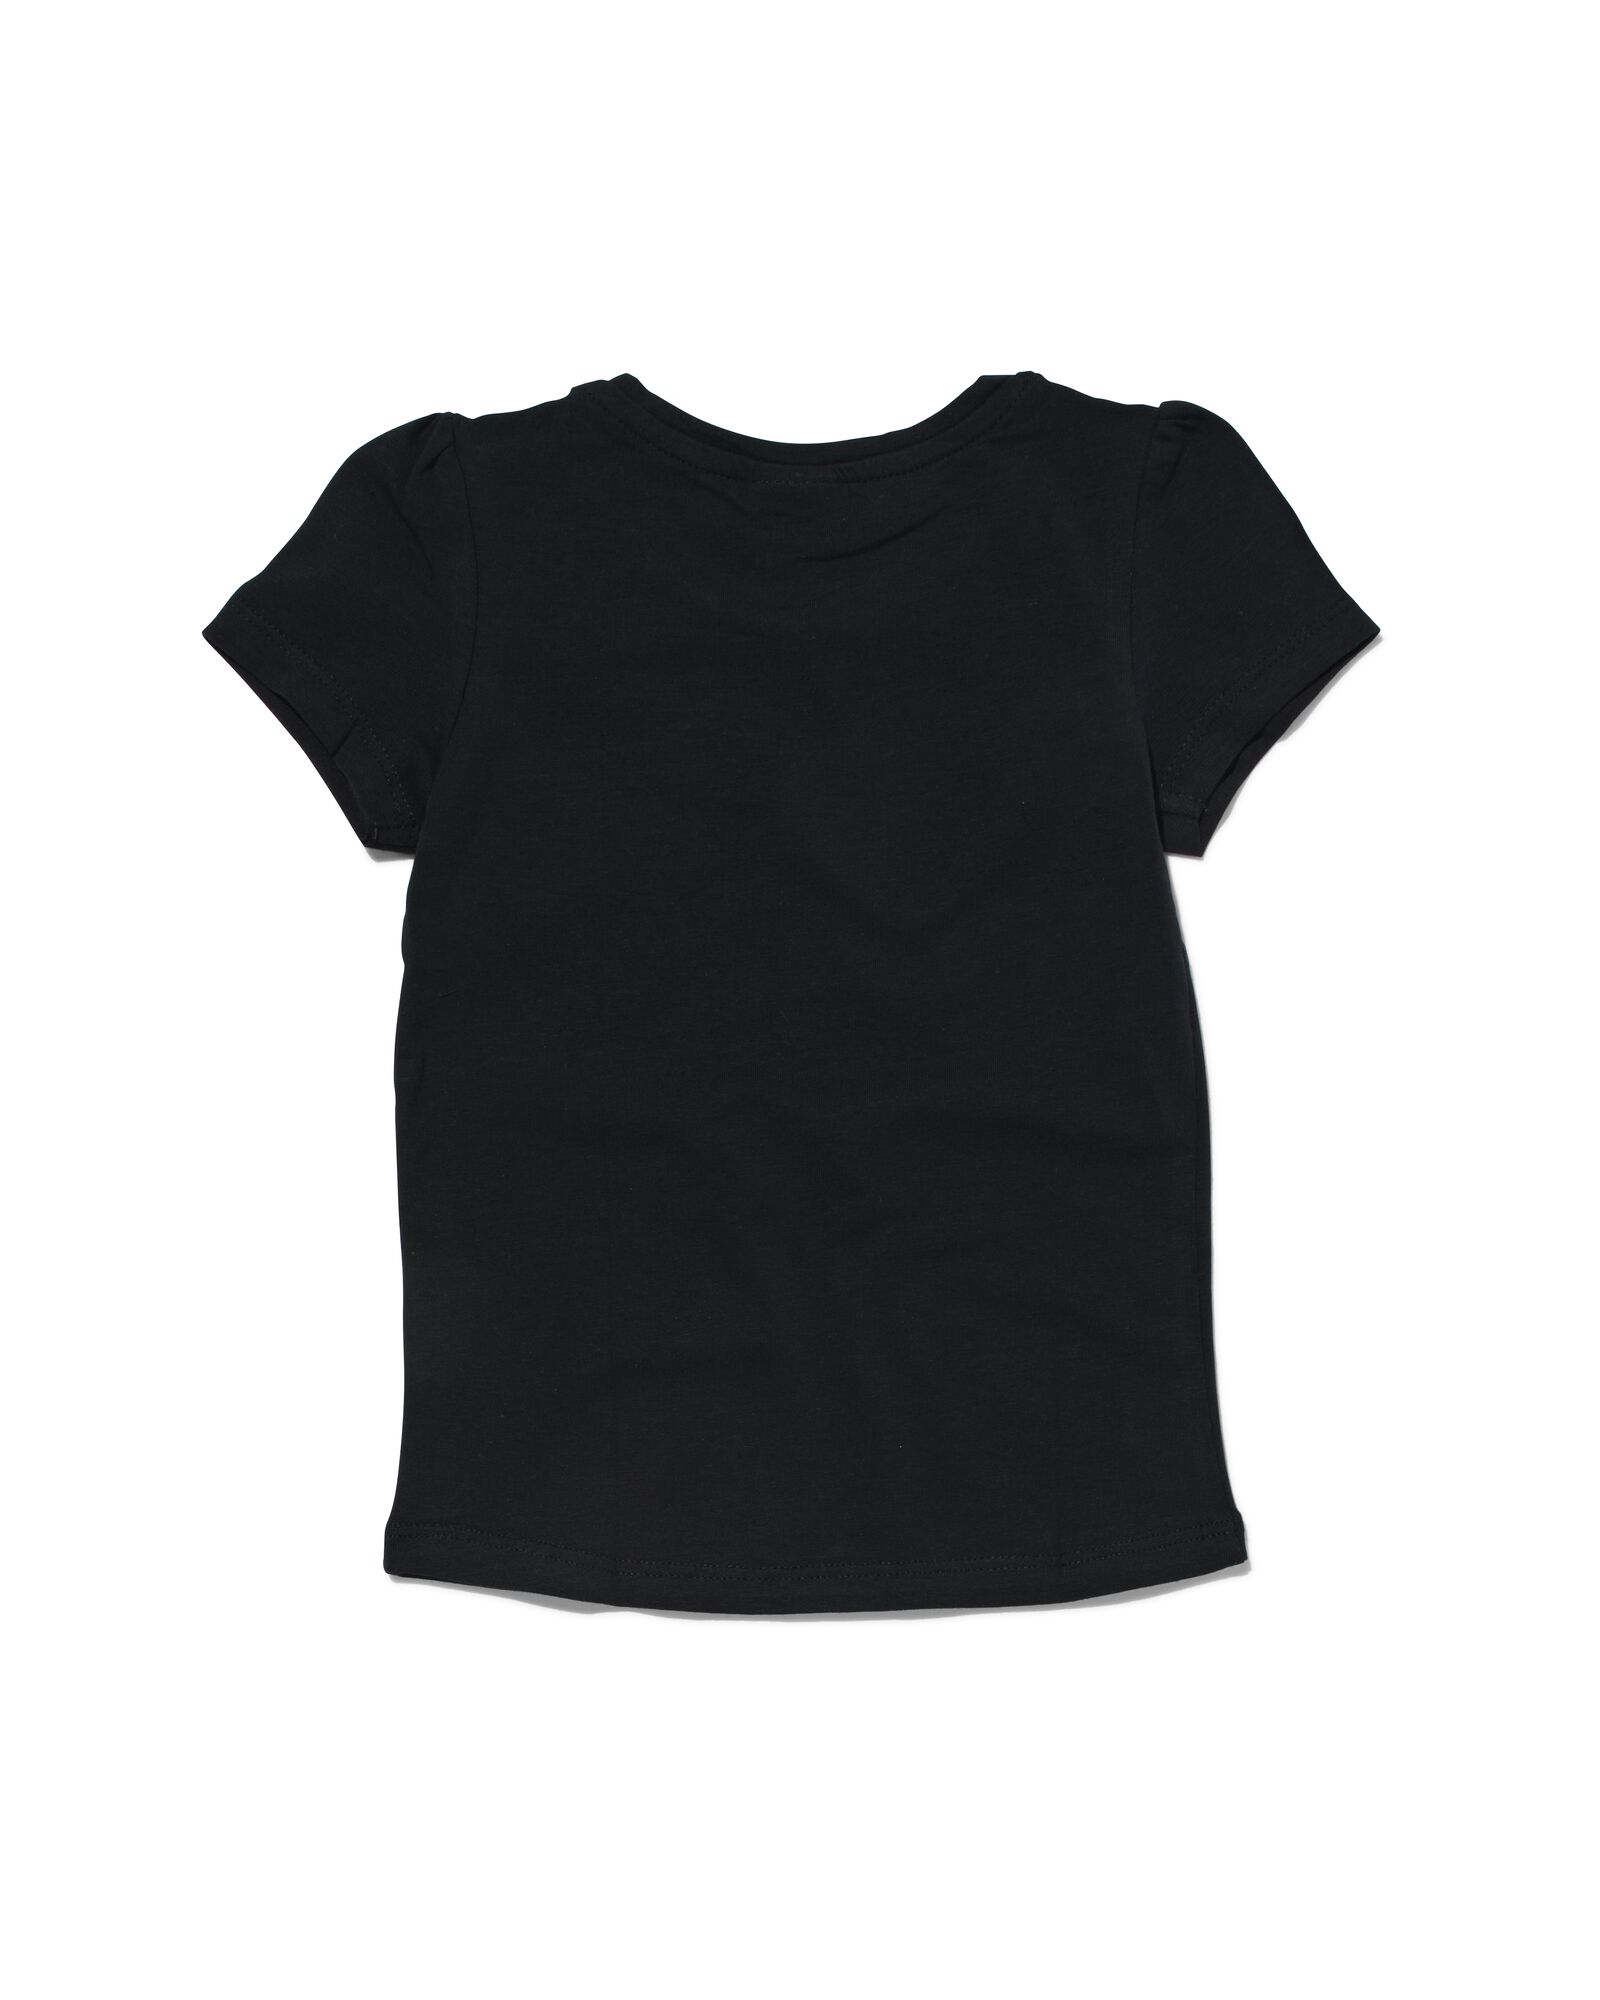 kinder t-shirt zwart 122/128 - 30843953 - HEMA